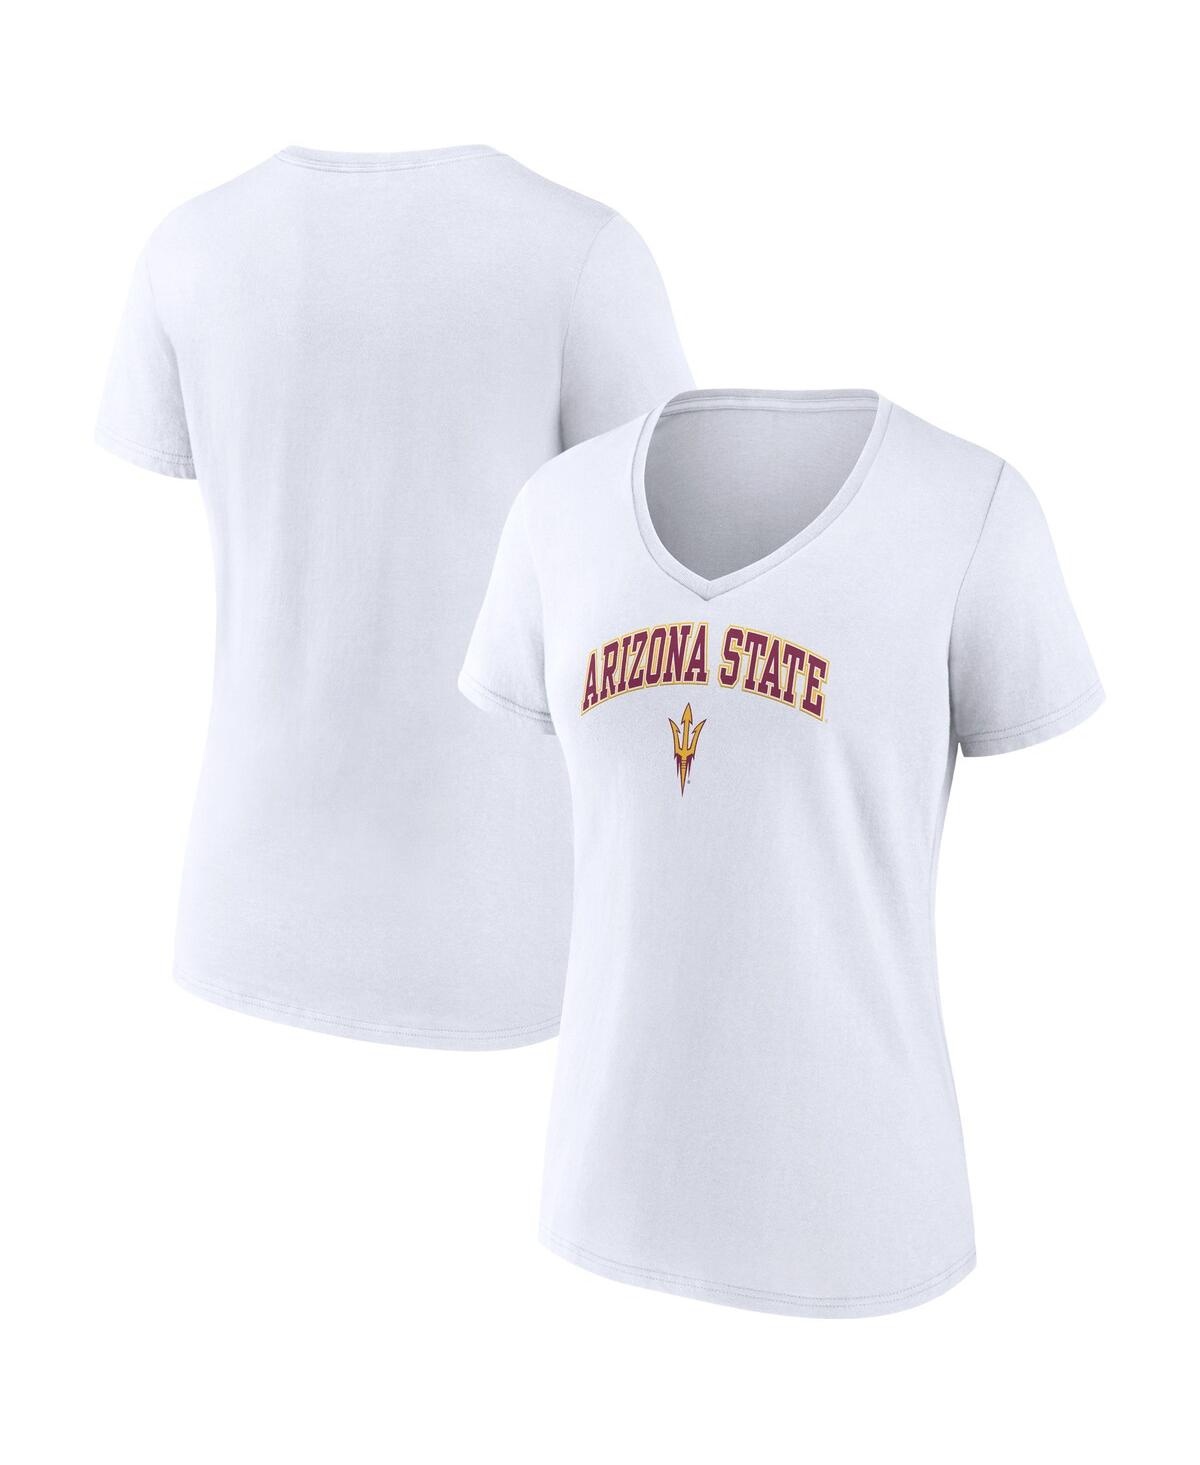 Fanatics Women's  White Arizona State Sun Devils Evergreen Campus V-neck T-shirt